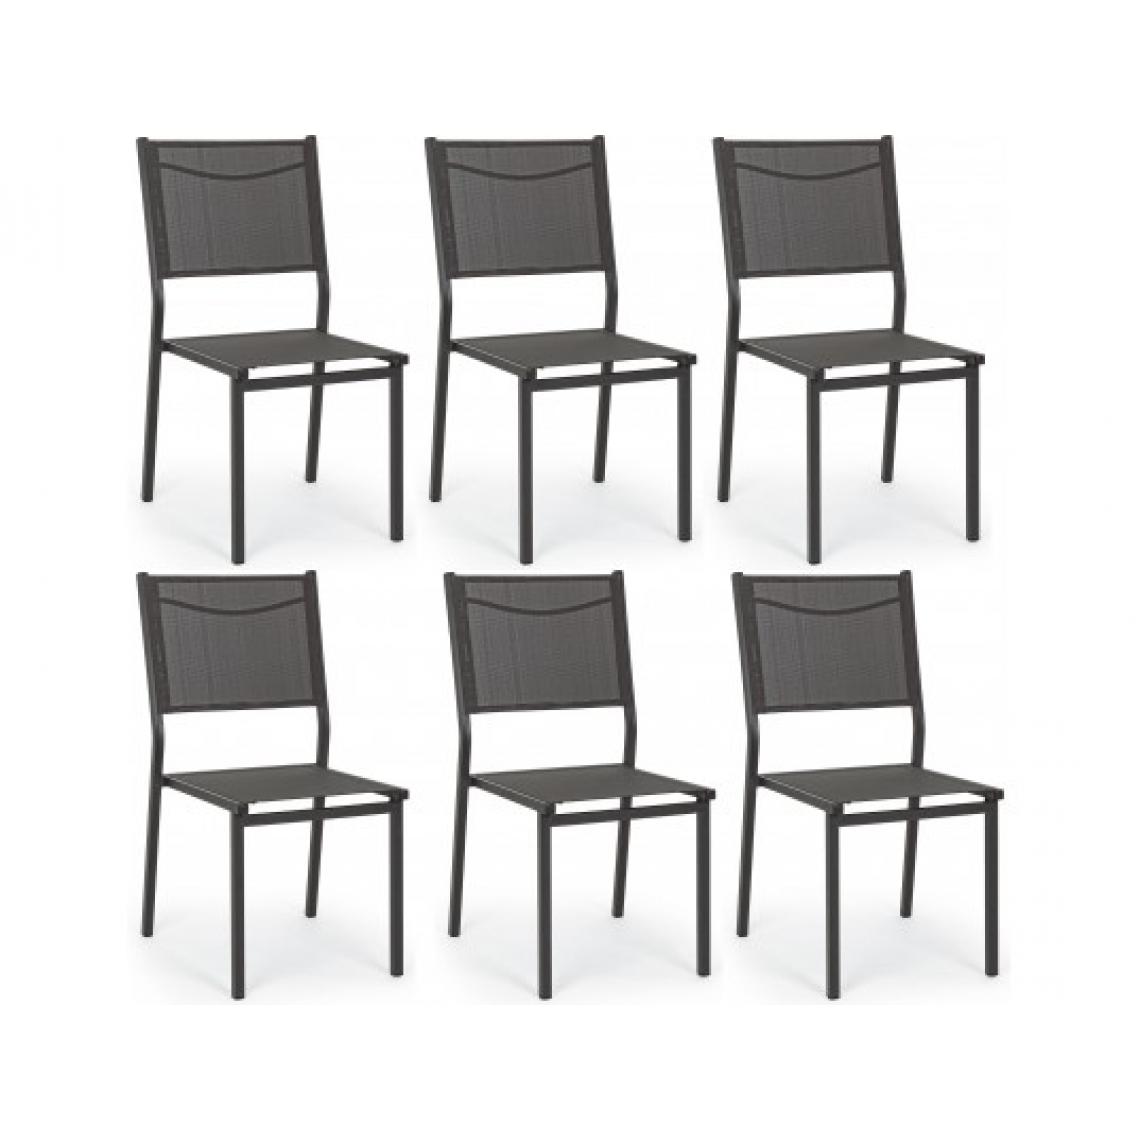 Bizzotto - Chaise Lot de 6 chaises Hilde anhracite - Chaises de jardin